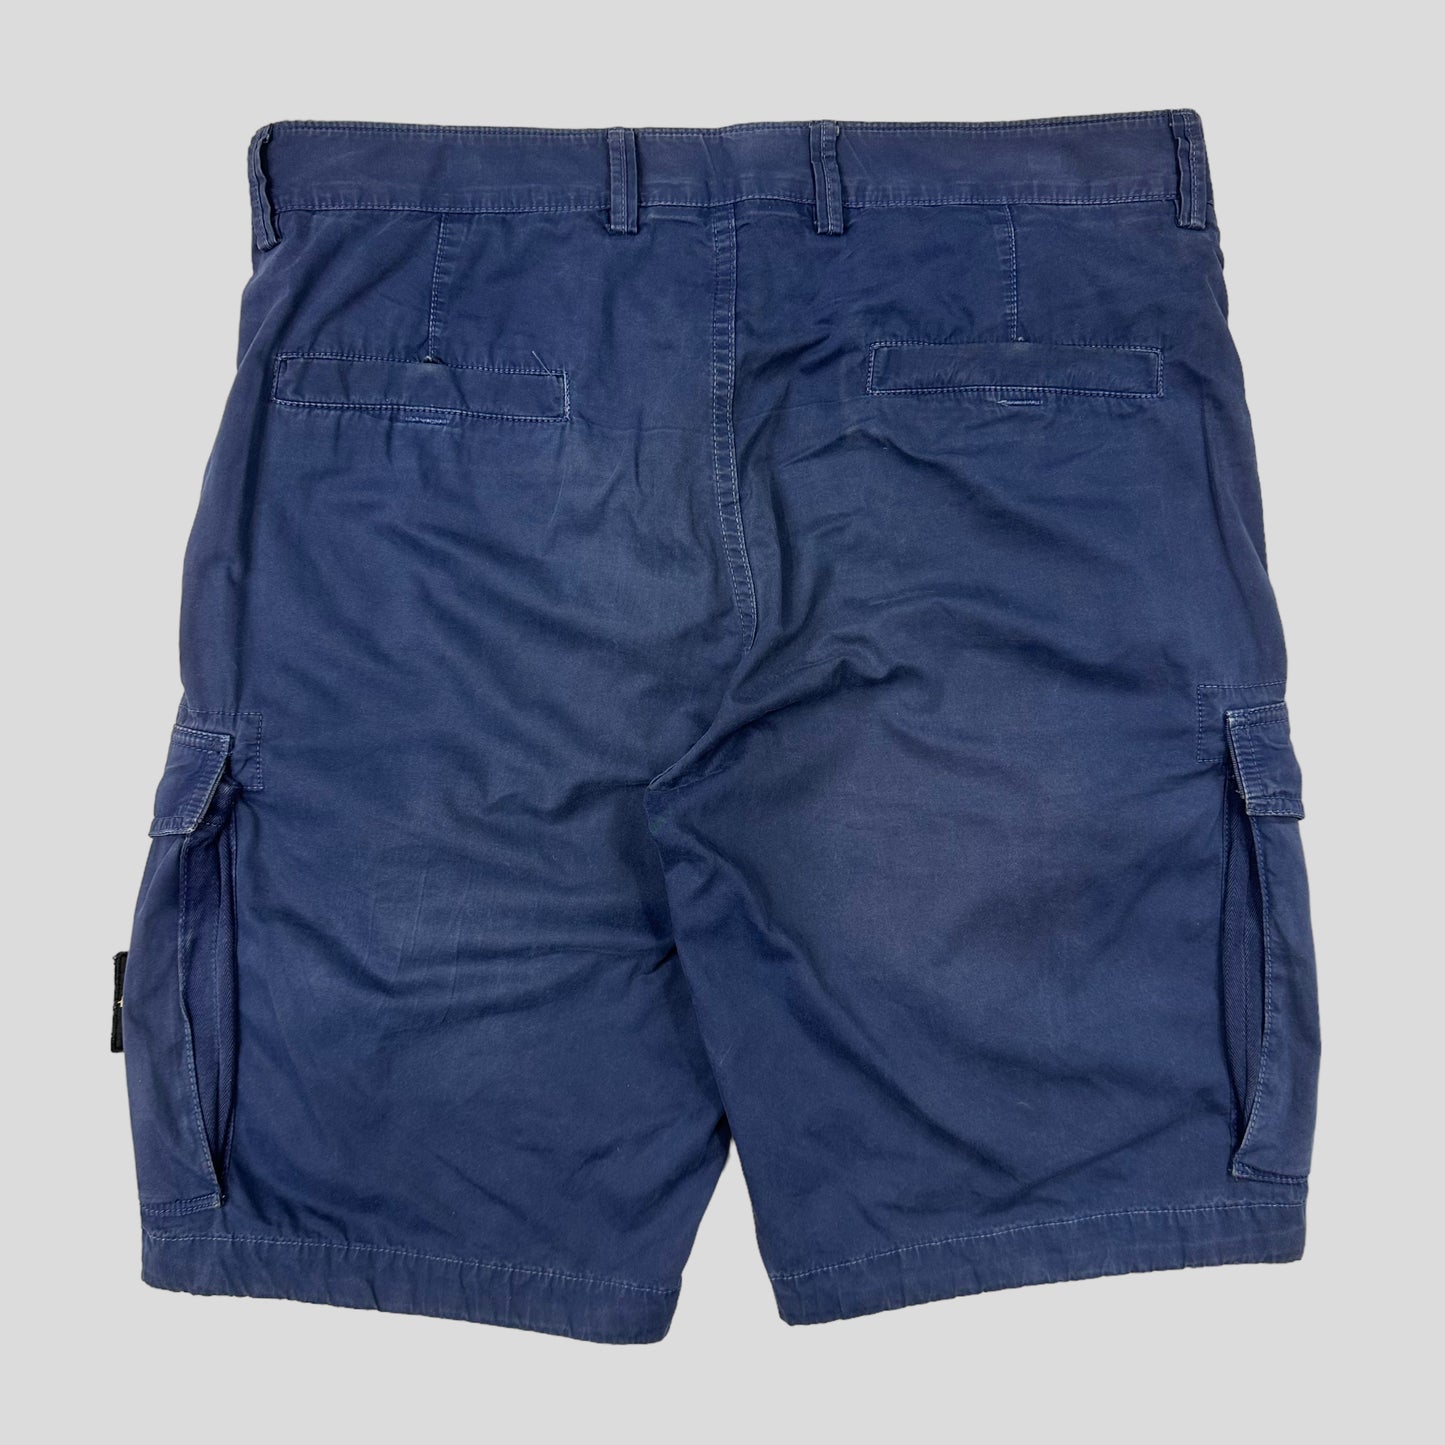 Stone Island Cargo Shorts - 33-36